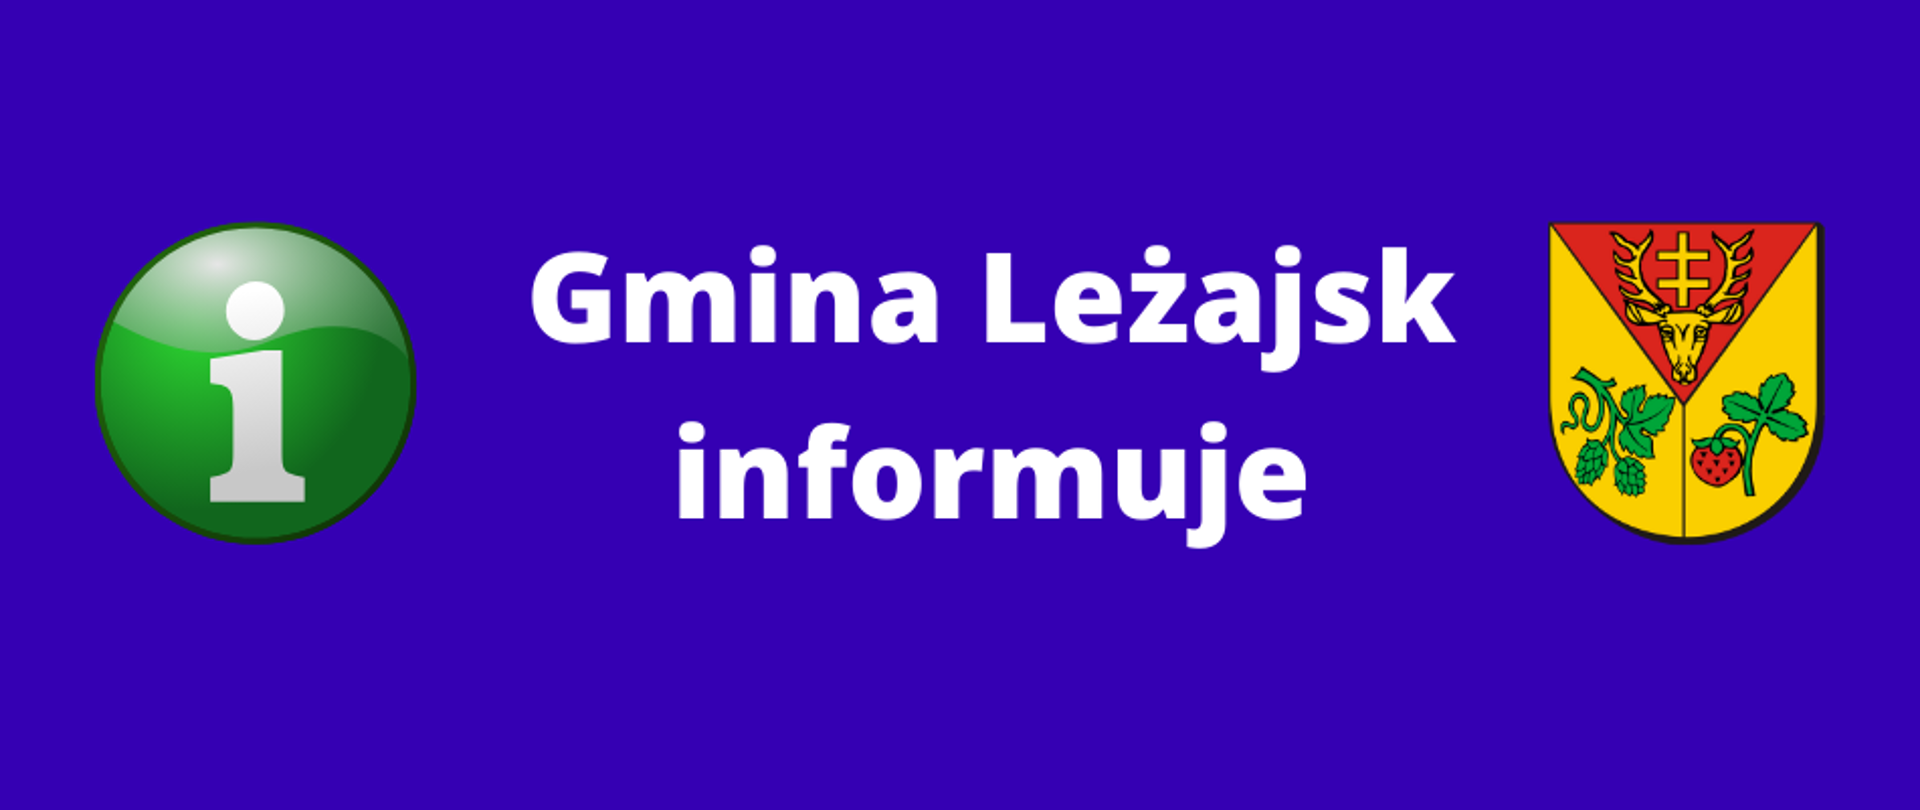 Gmina Leżajsk informuje